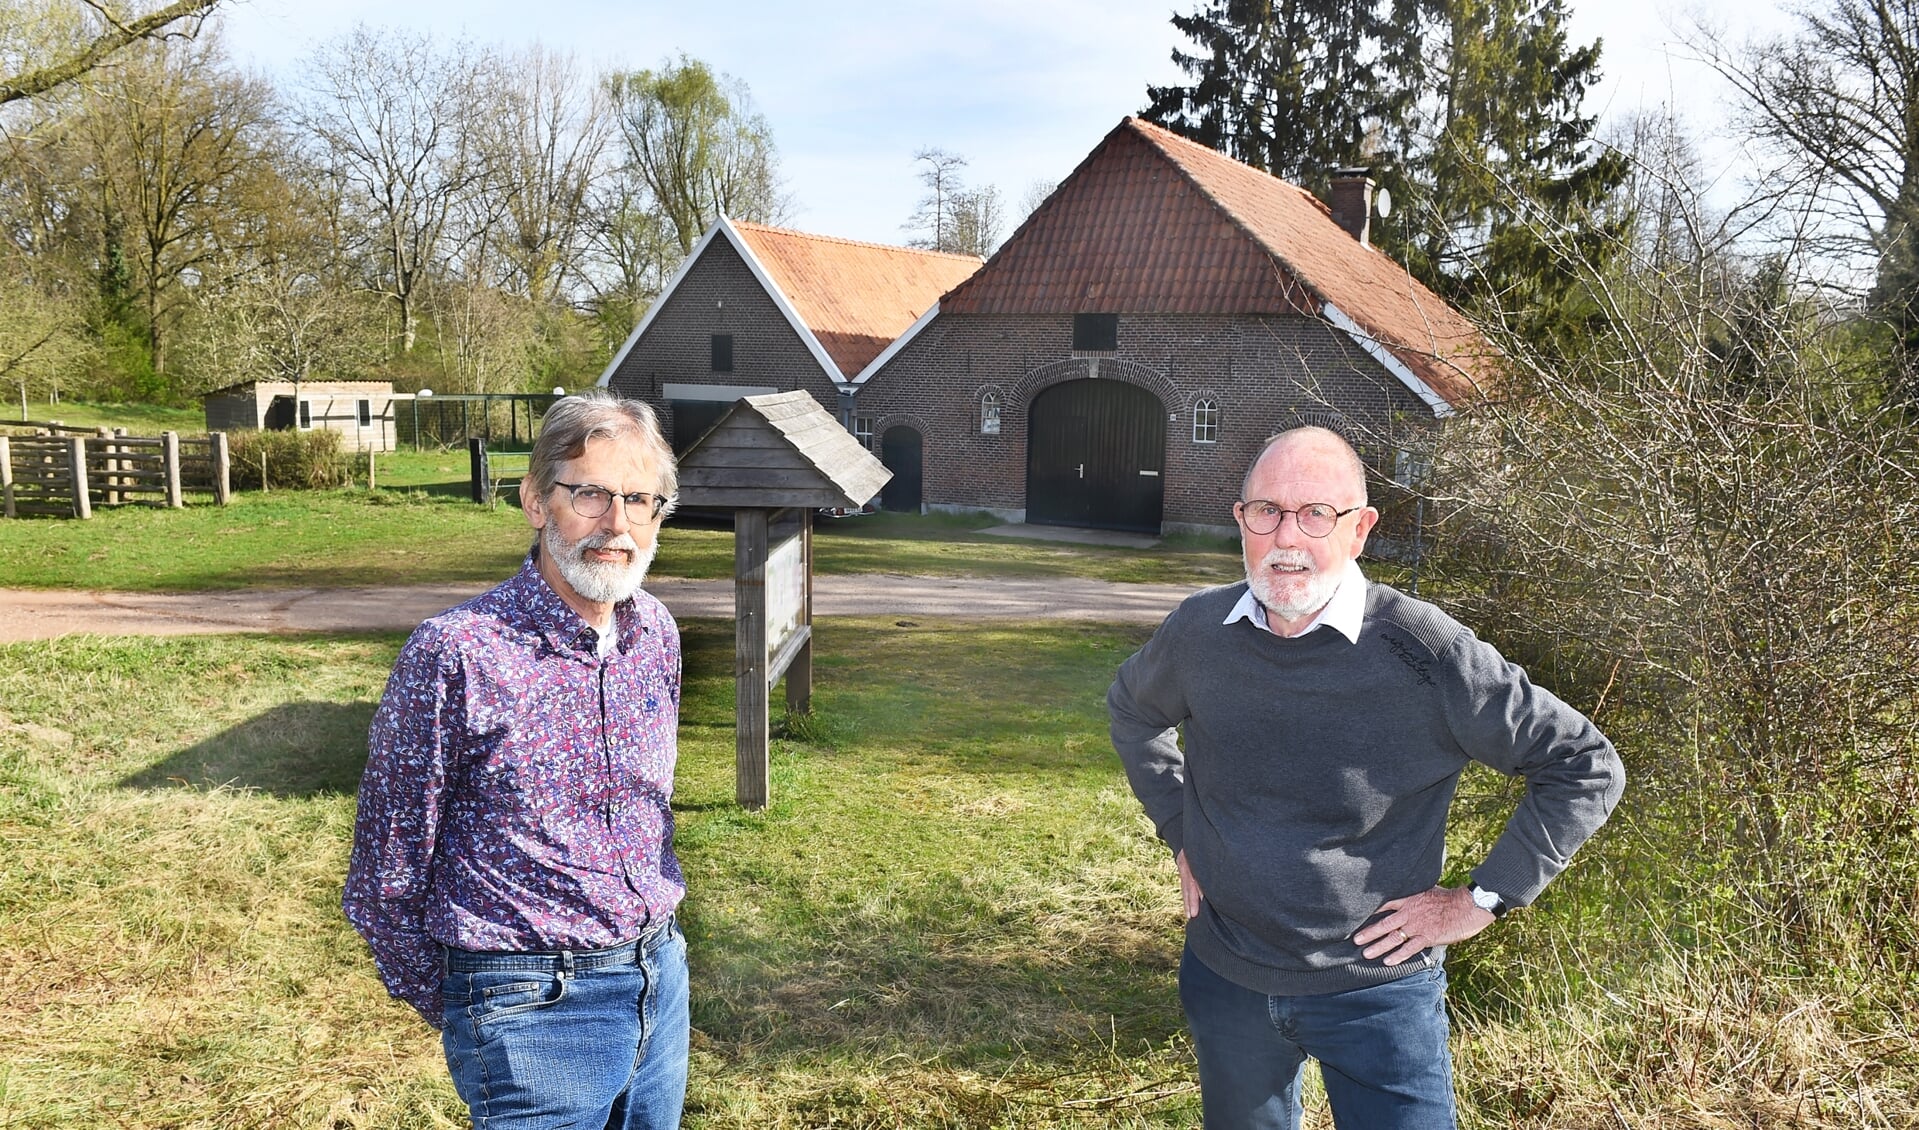 Wim Beijer en rechts Han Hensing bij de oude monumentale boerderij in natuurpark Overstegen. Foto: Roel Kleinpenning

